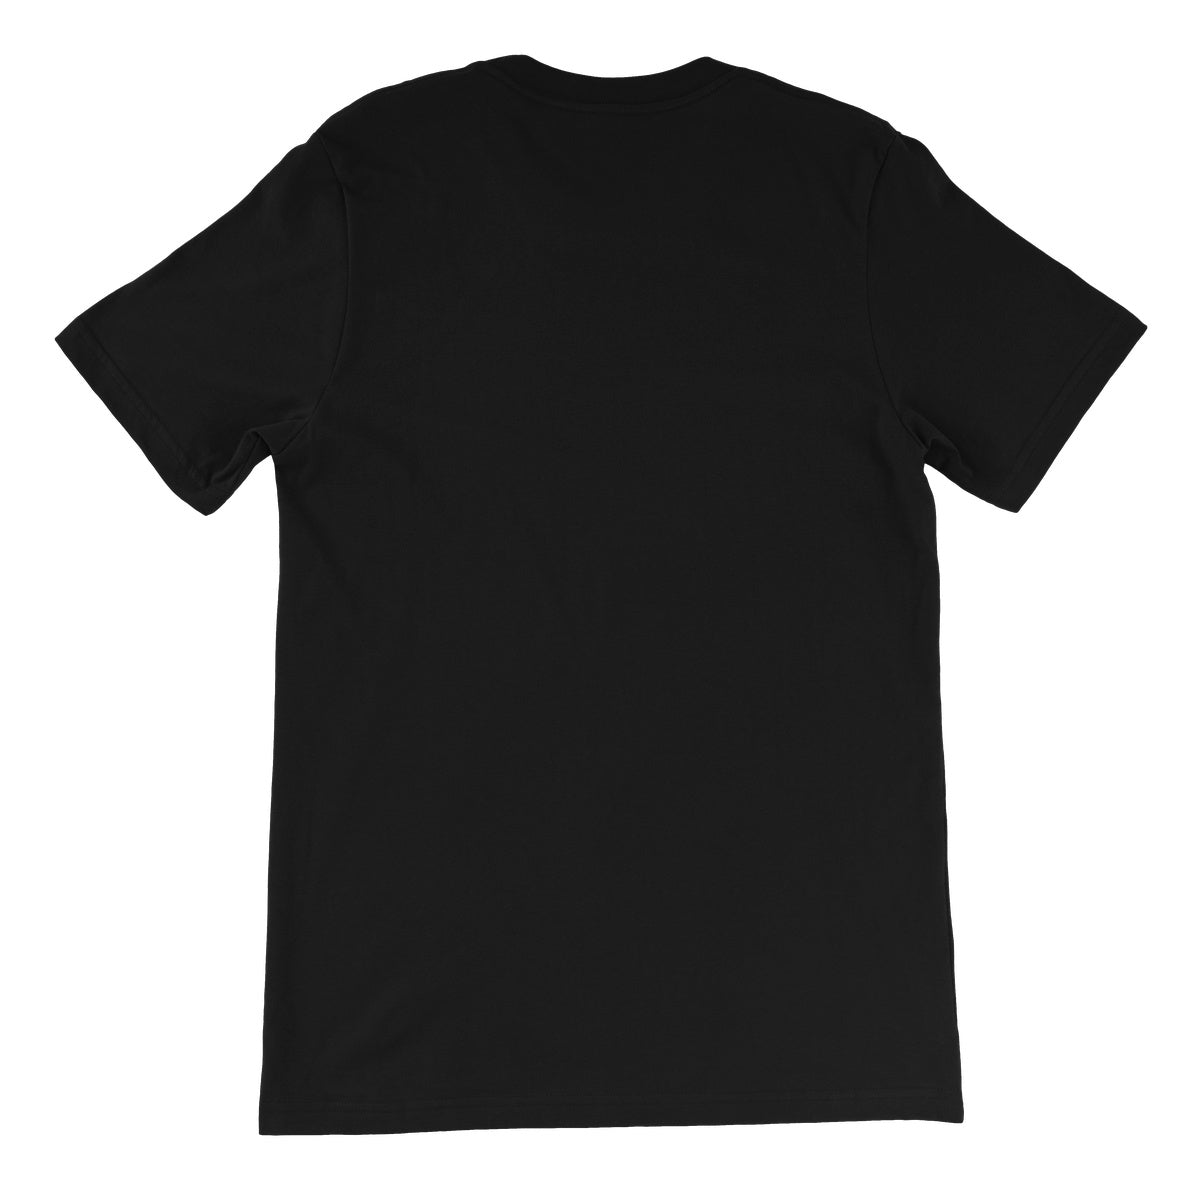 Bound For Glory 2020 - Madison Unisex Short Sleeve T-Shirt